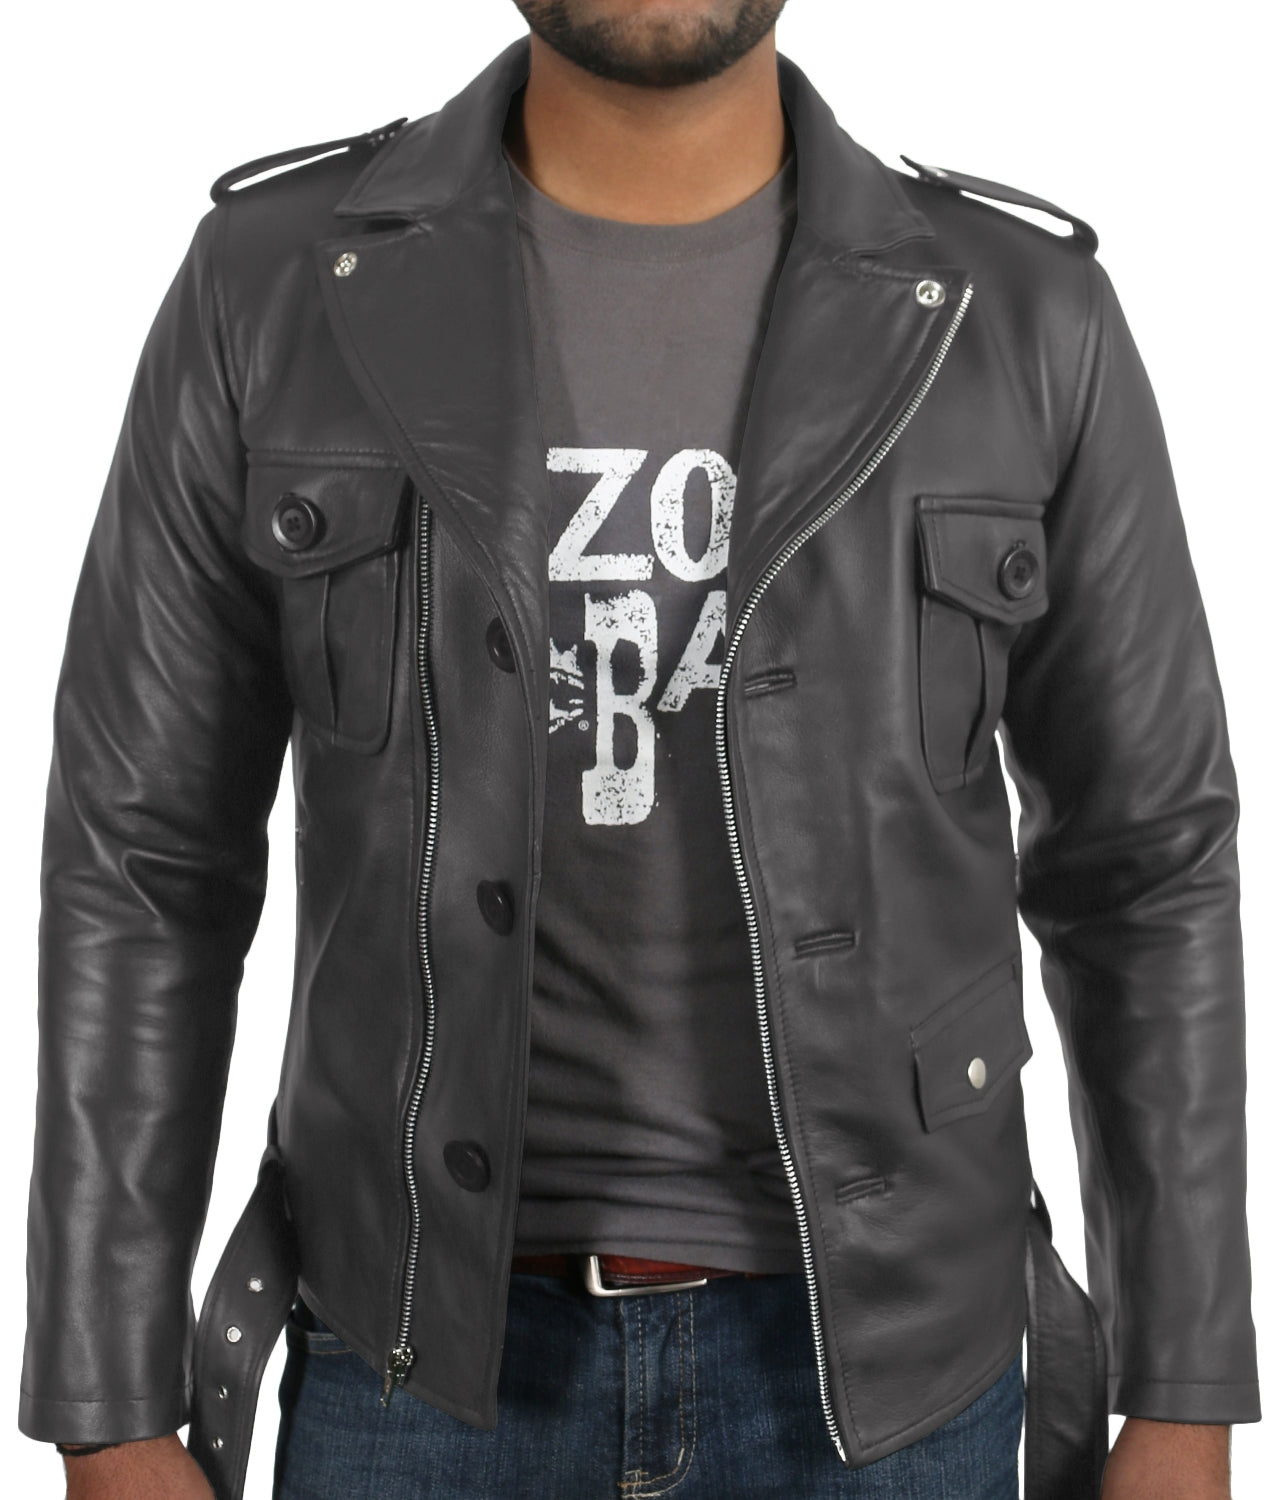 Leather Jackets Hub Mens Genuine Lambskin Leather Jacket (Black, Double Rider Jacket) - 1501031